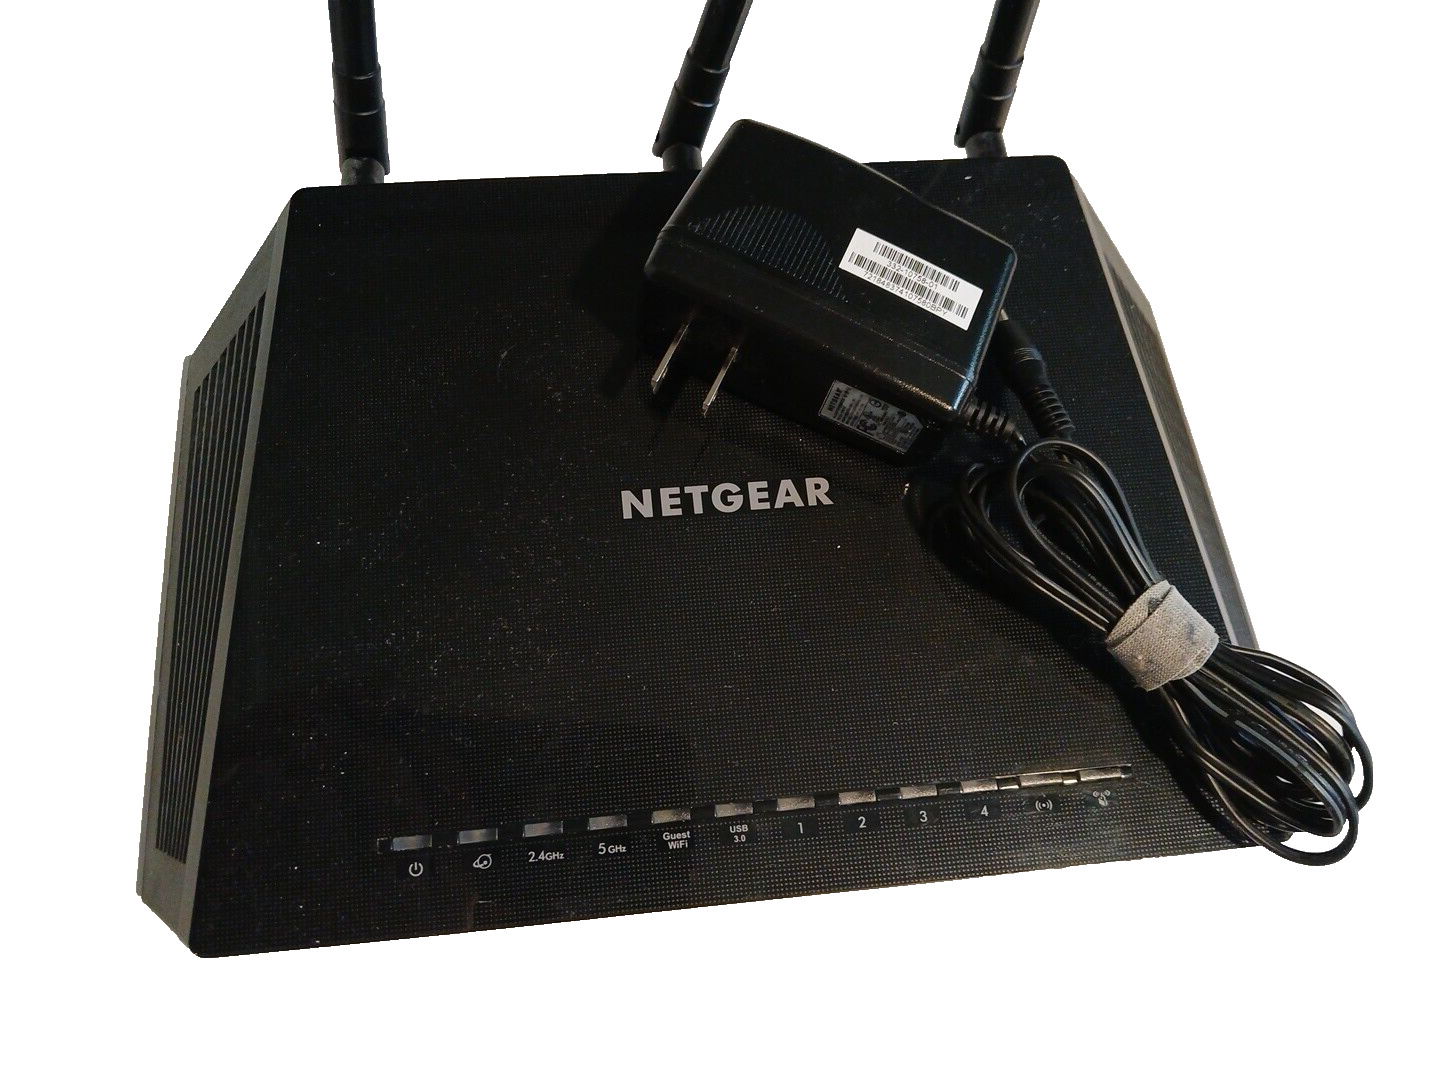 NETGEAR R7600v3 Nighthawk AC1750 Smart WiFi Router